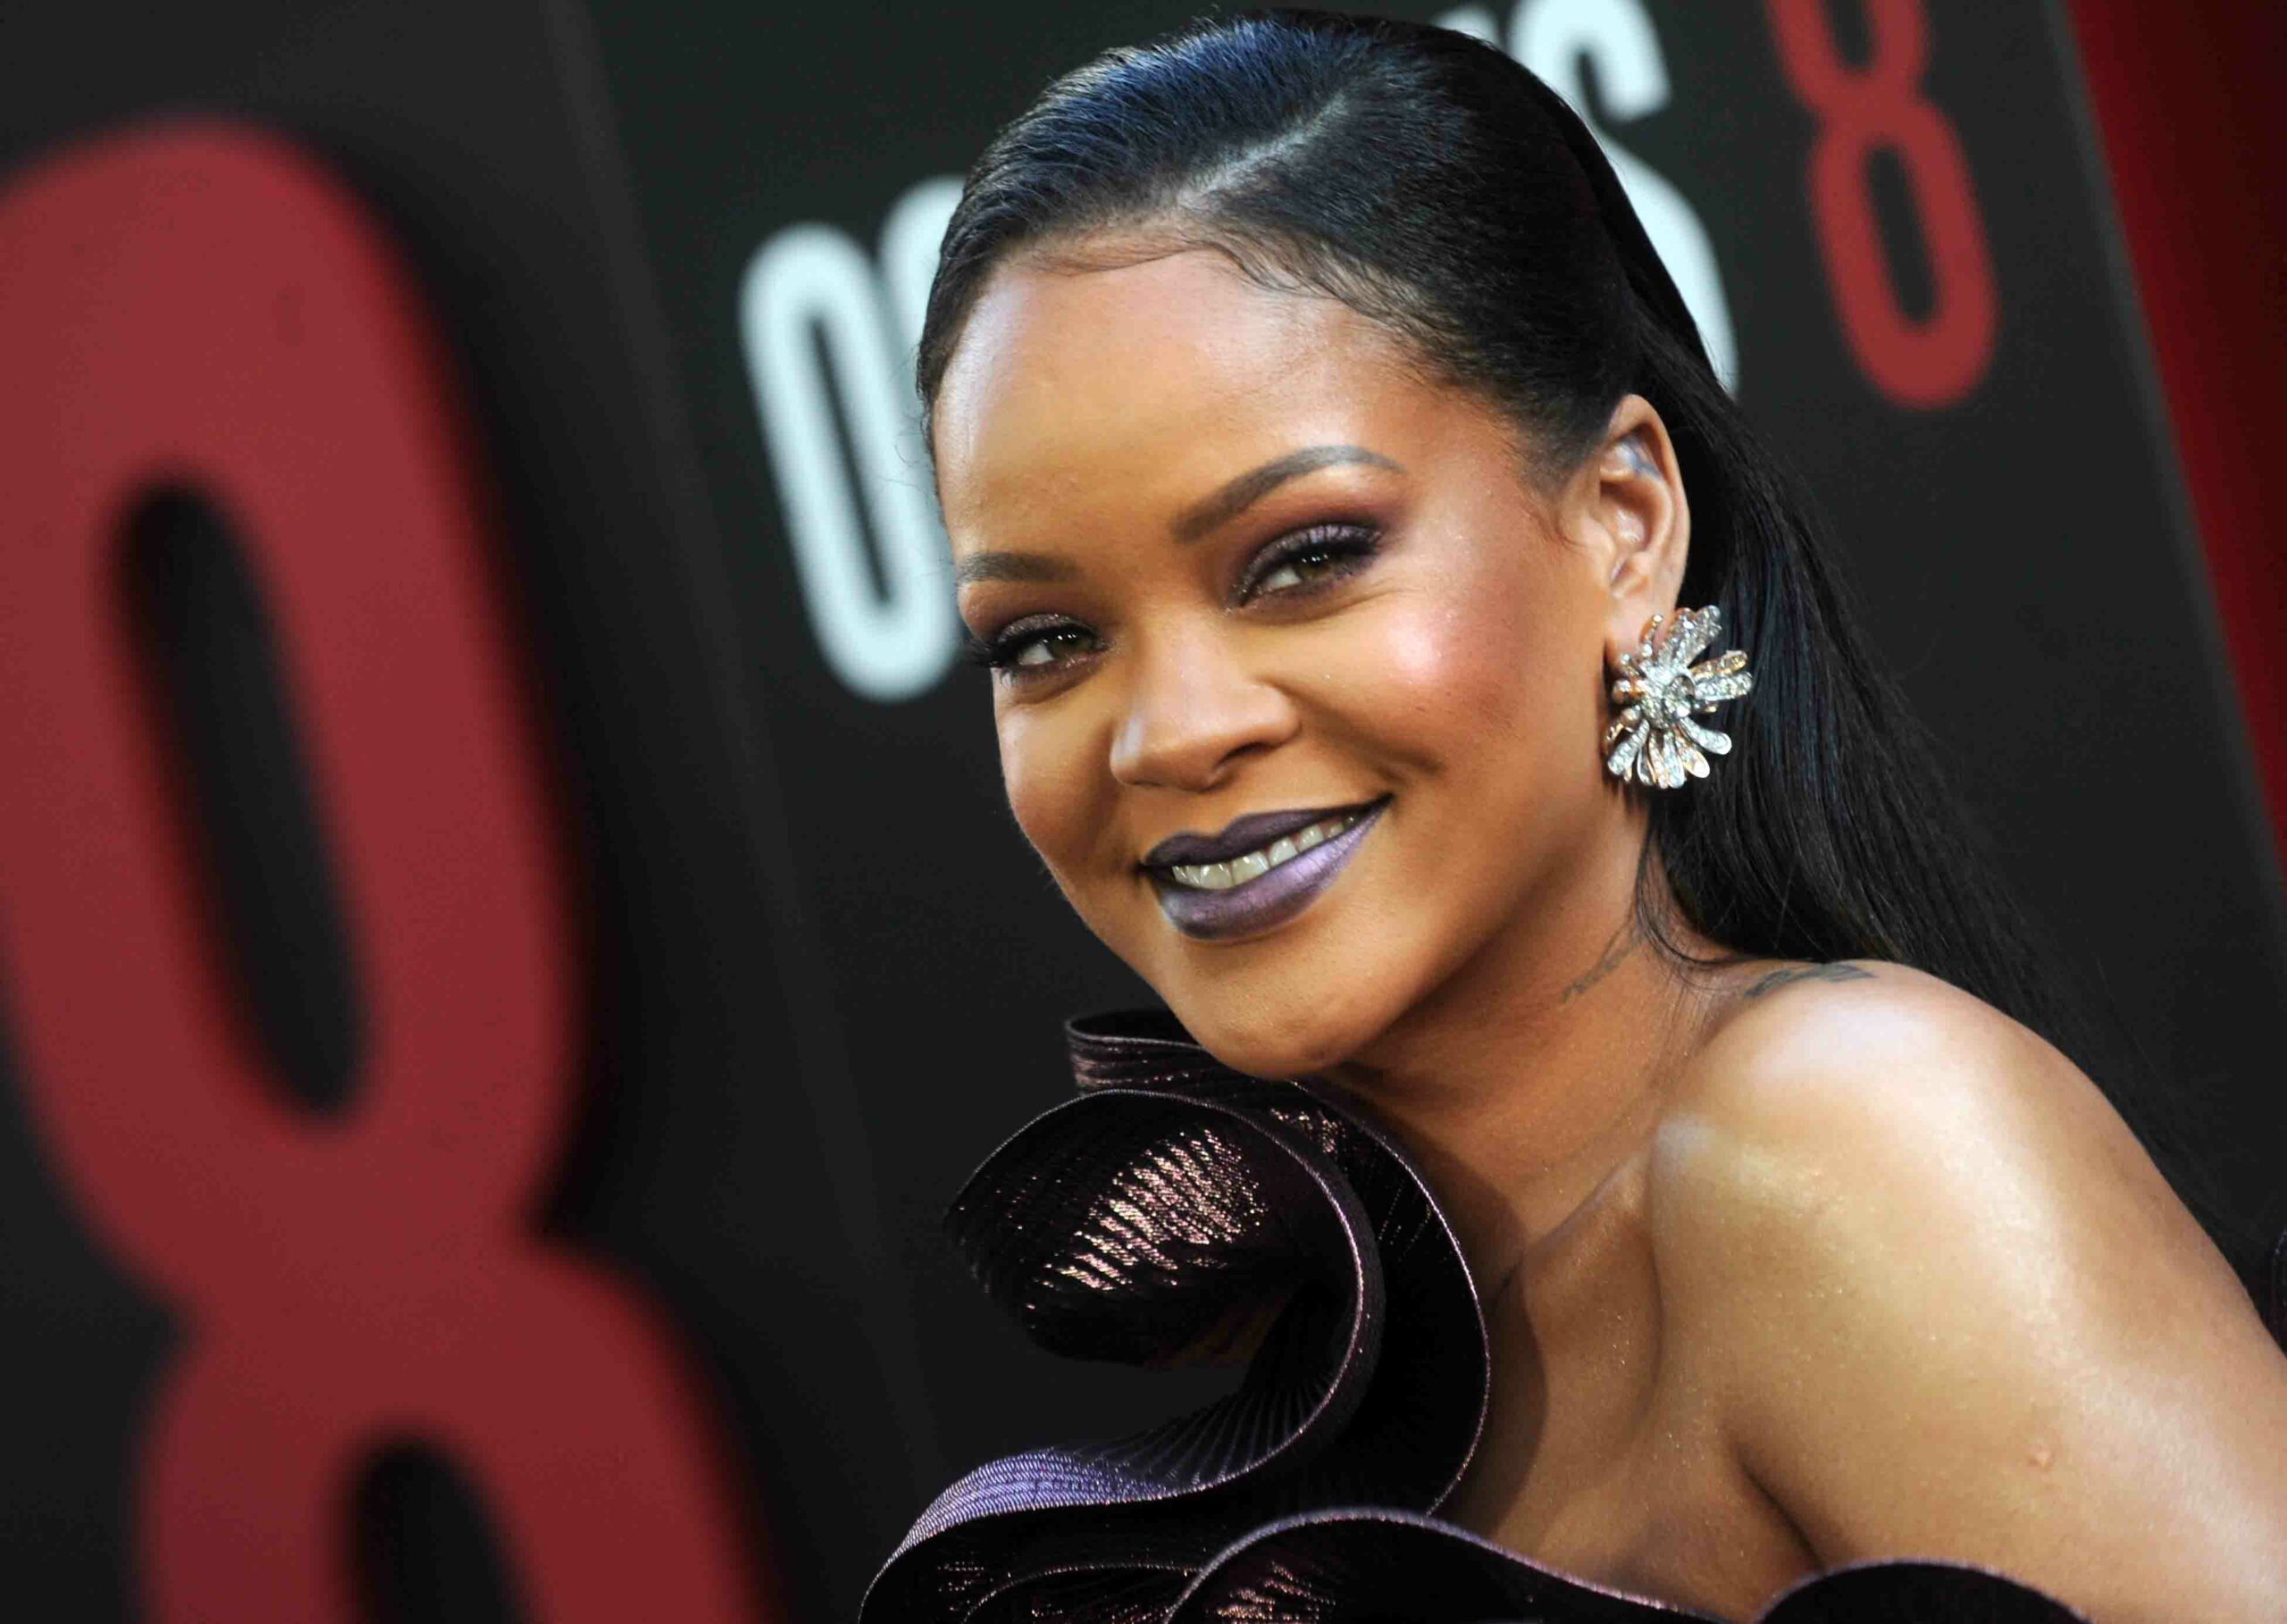 Shes back! Rihanna a anunțat că revine cu album nou. La ce să te aștepți?